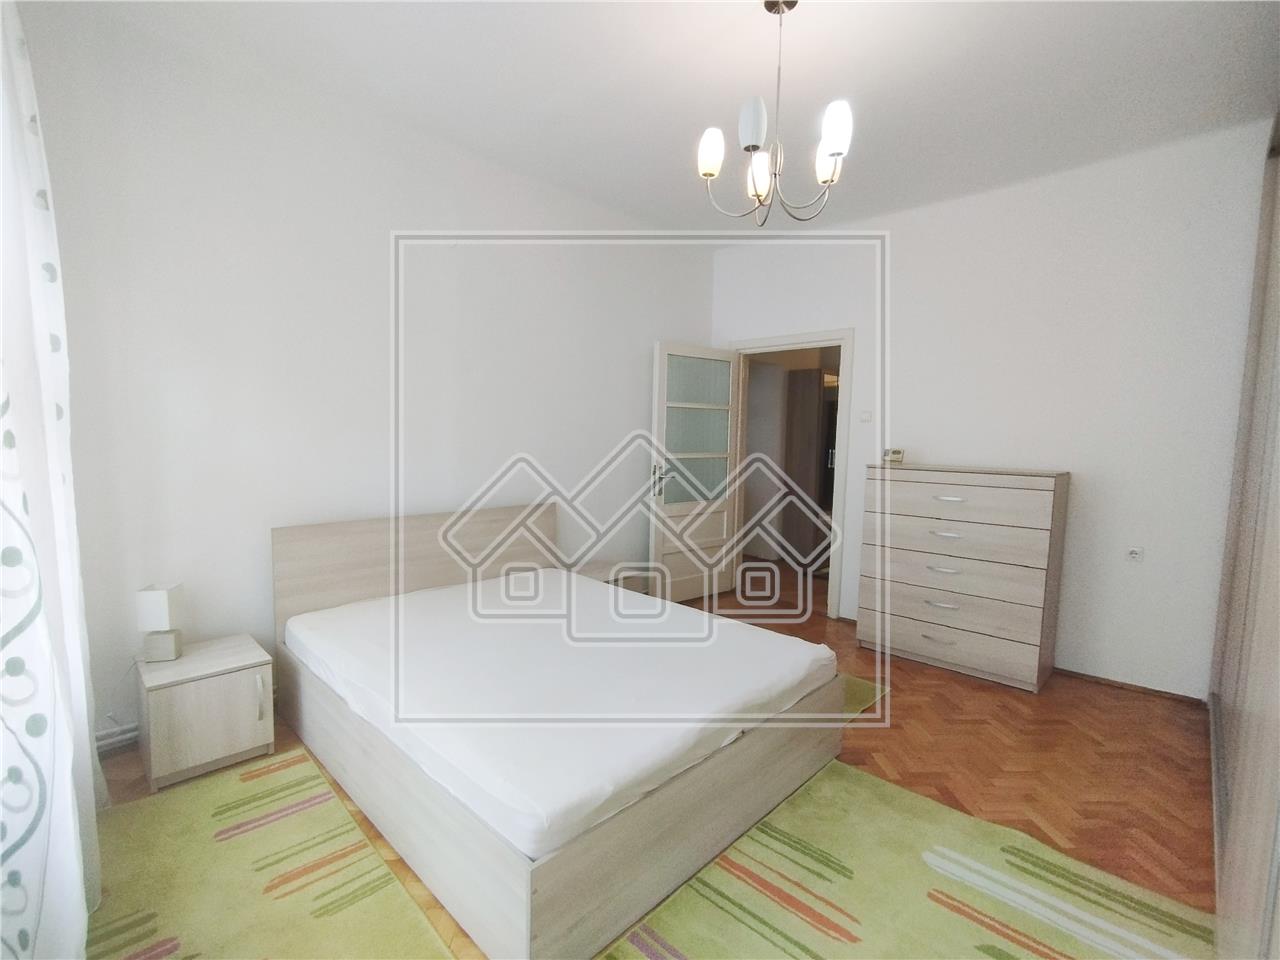 Apartament de inchiriat in Sibiu - 2 camere - zona centrala